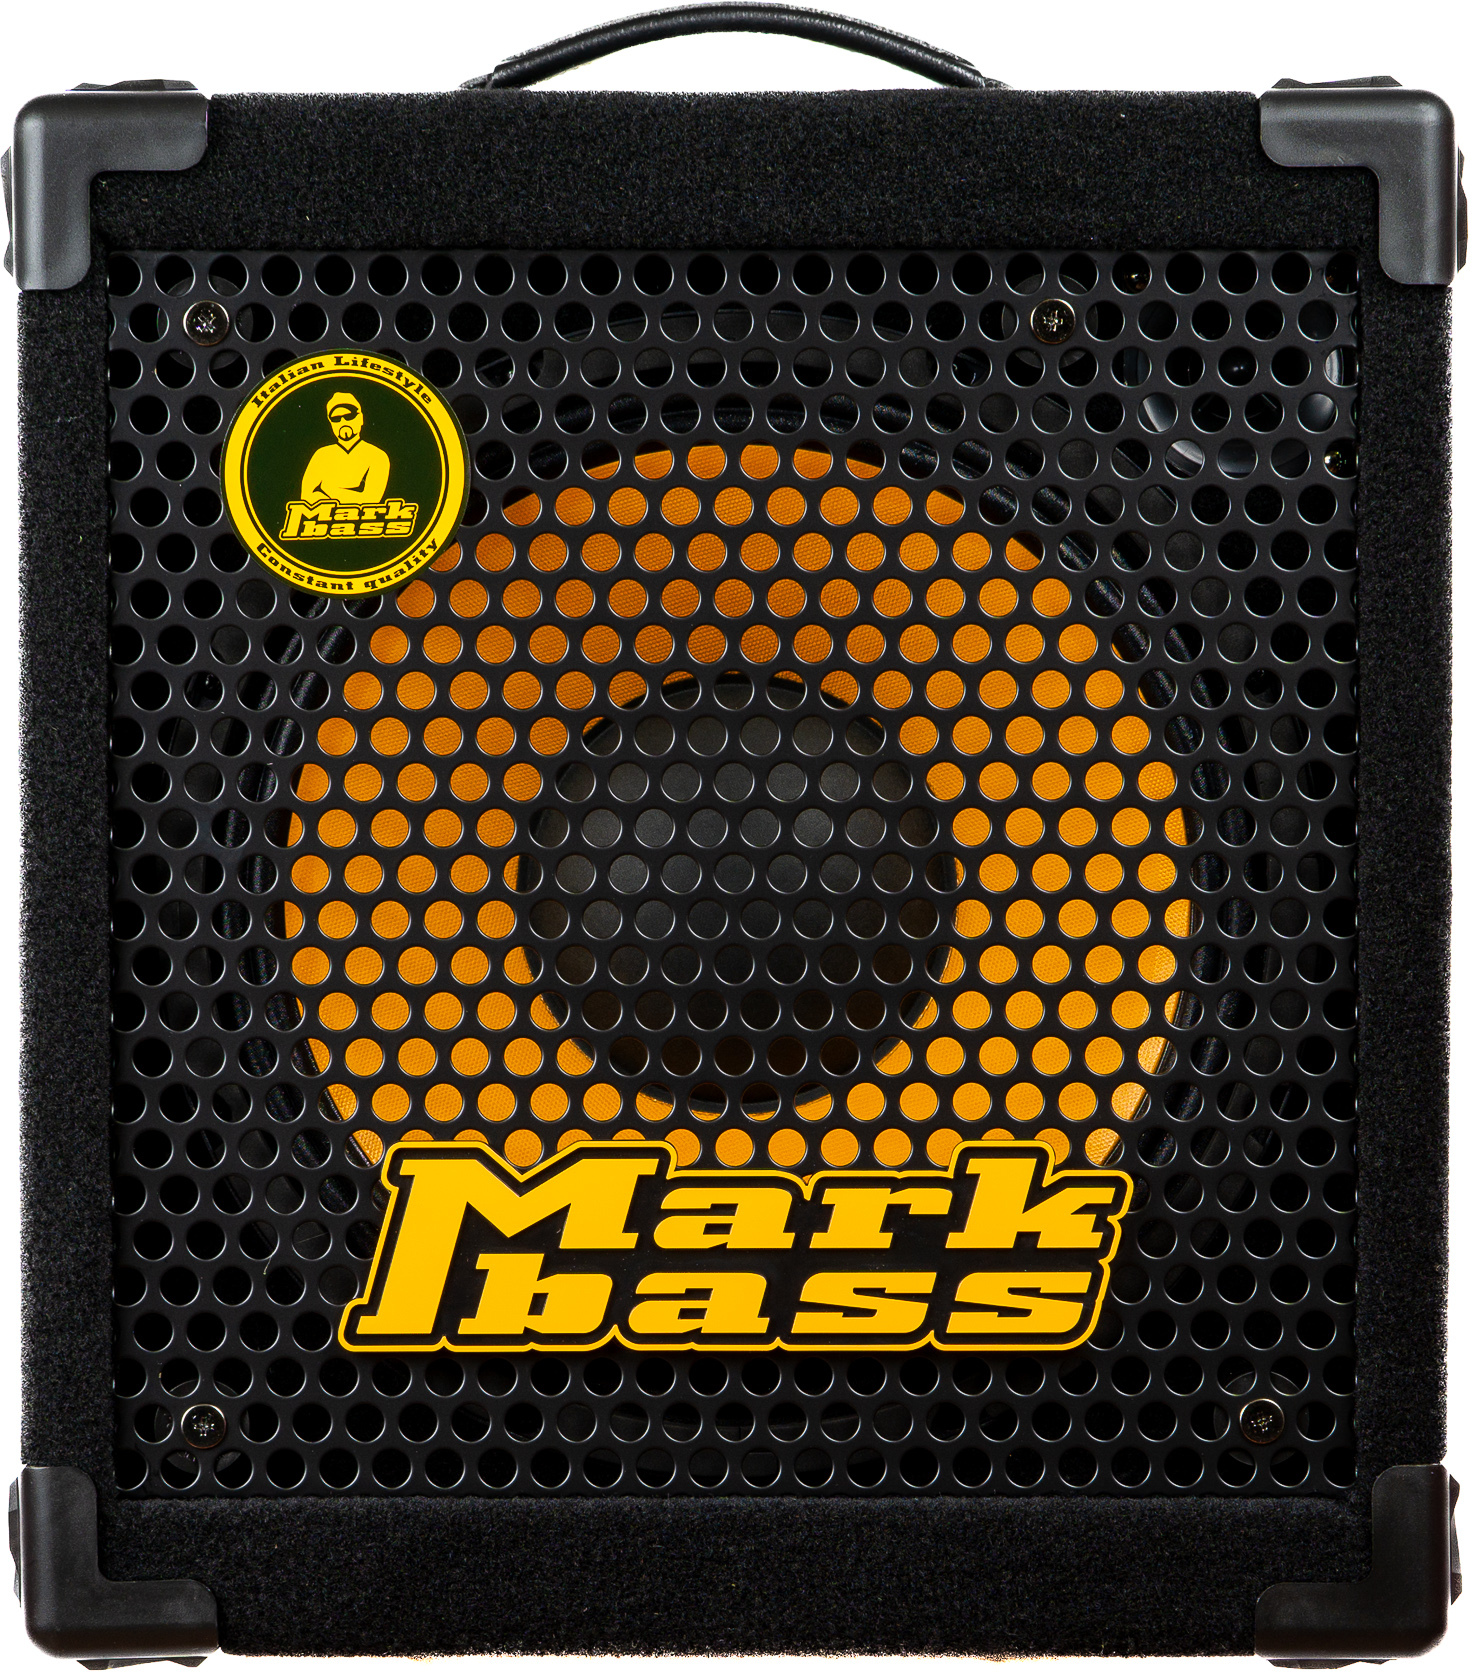 Markbass Mini Cmd 121 P V Piezo 1x12 500w Black - Combo amplificador para bajo - Main picture